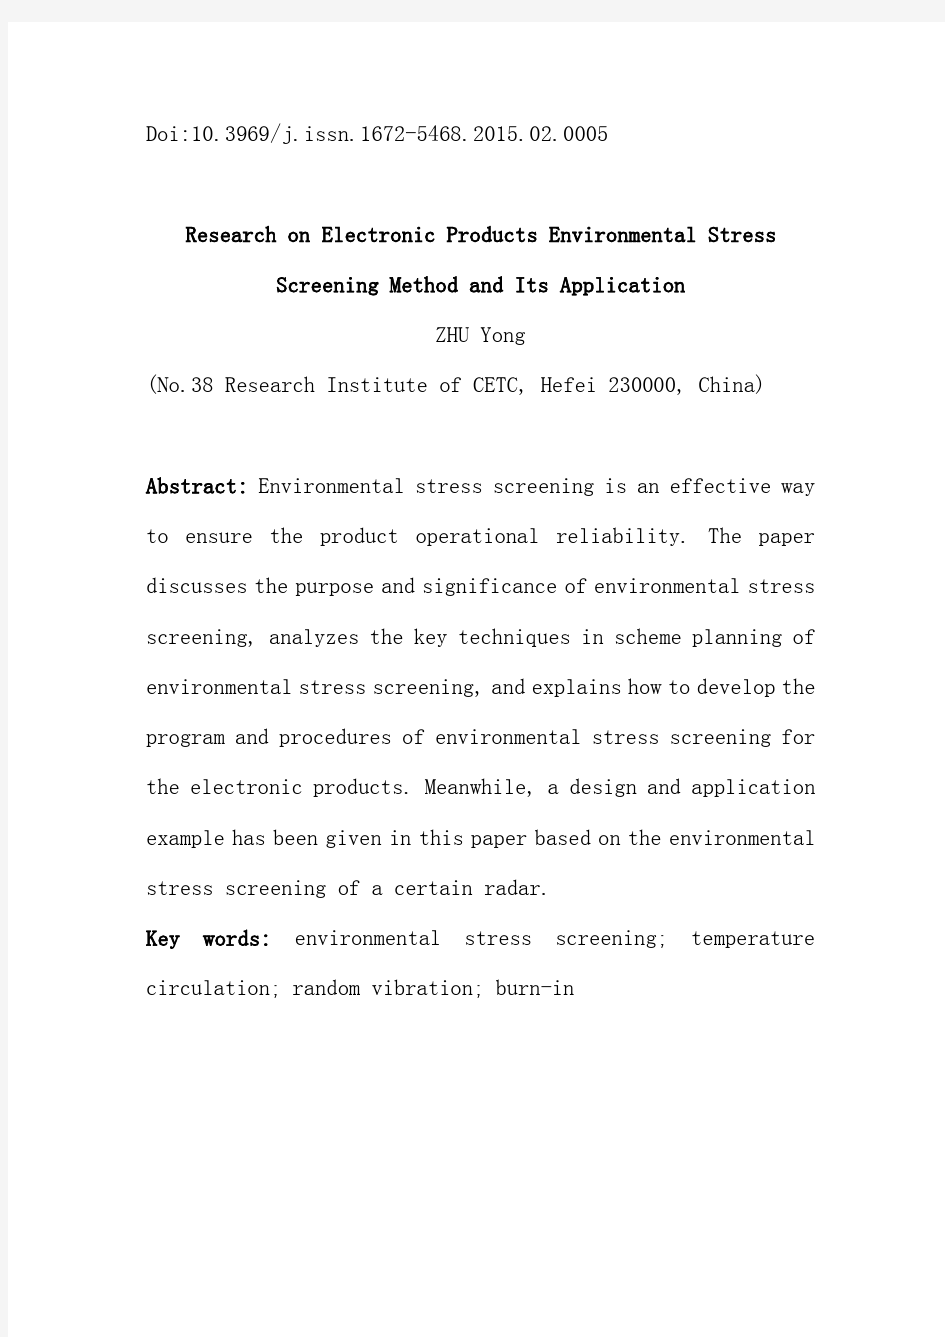 电子产品环境应力筛选方法及其应用研究(整理件)